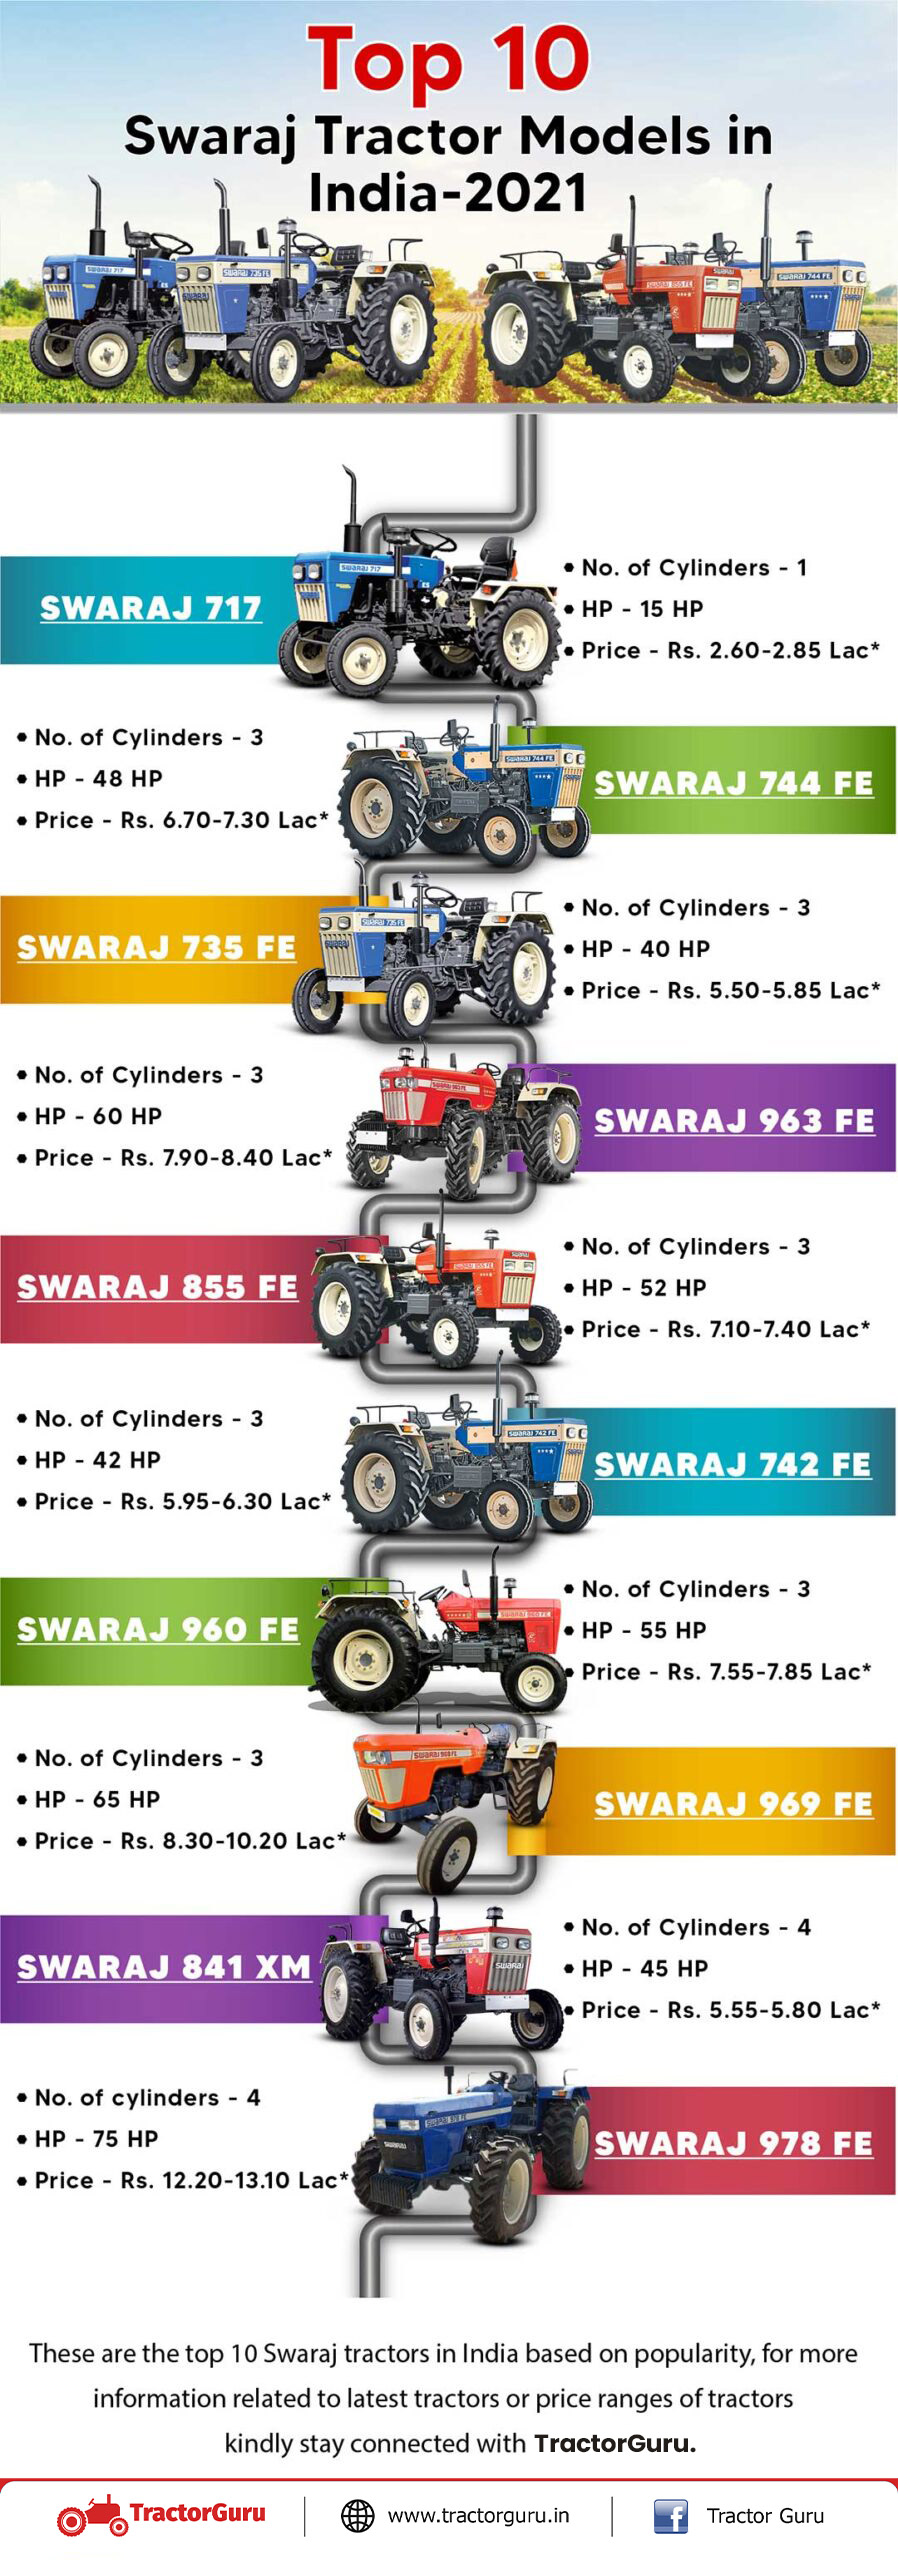 Top 10 Swaraj Tractor